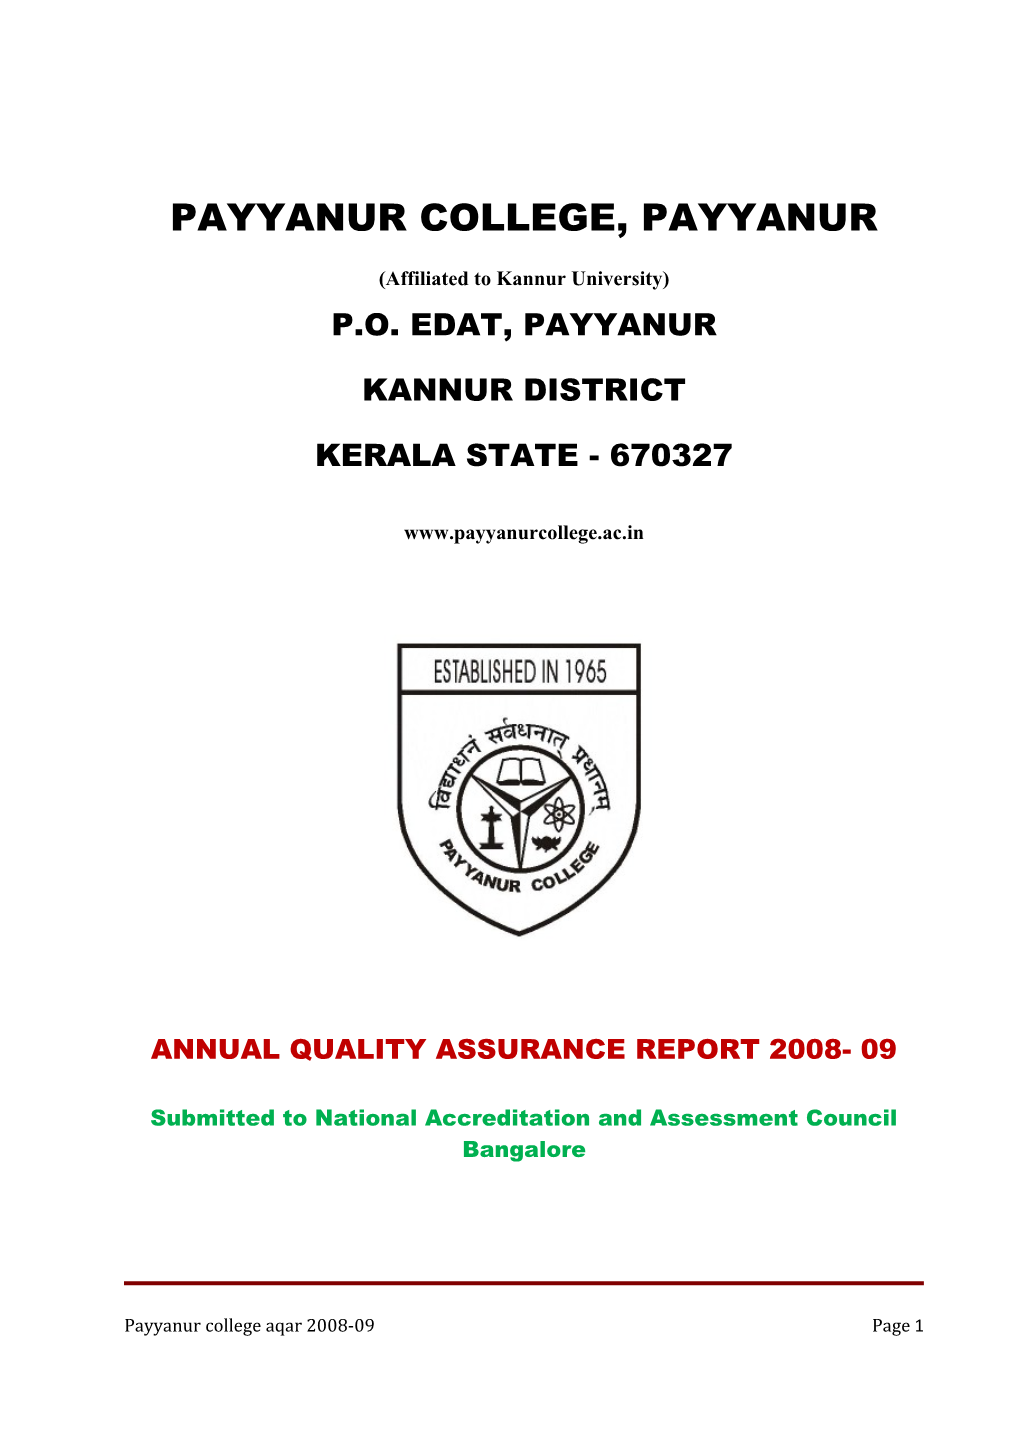 Payyanur College, Payyanur